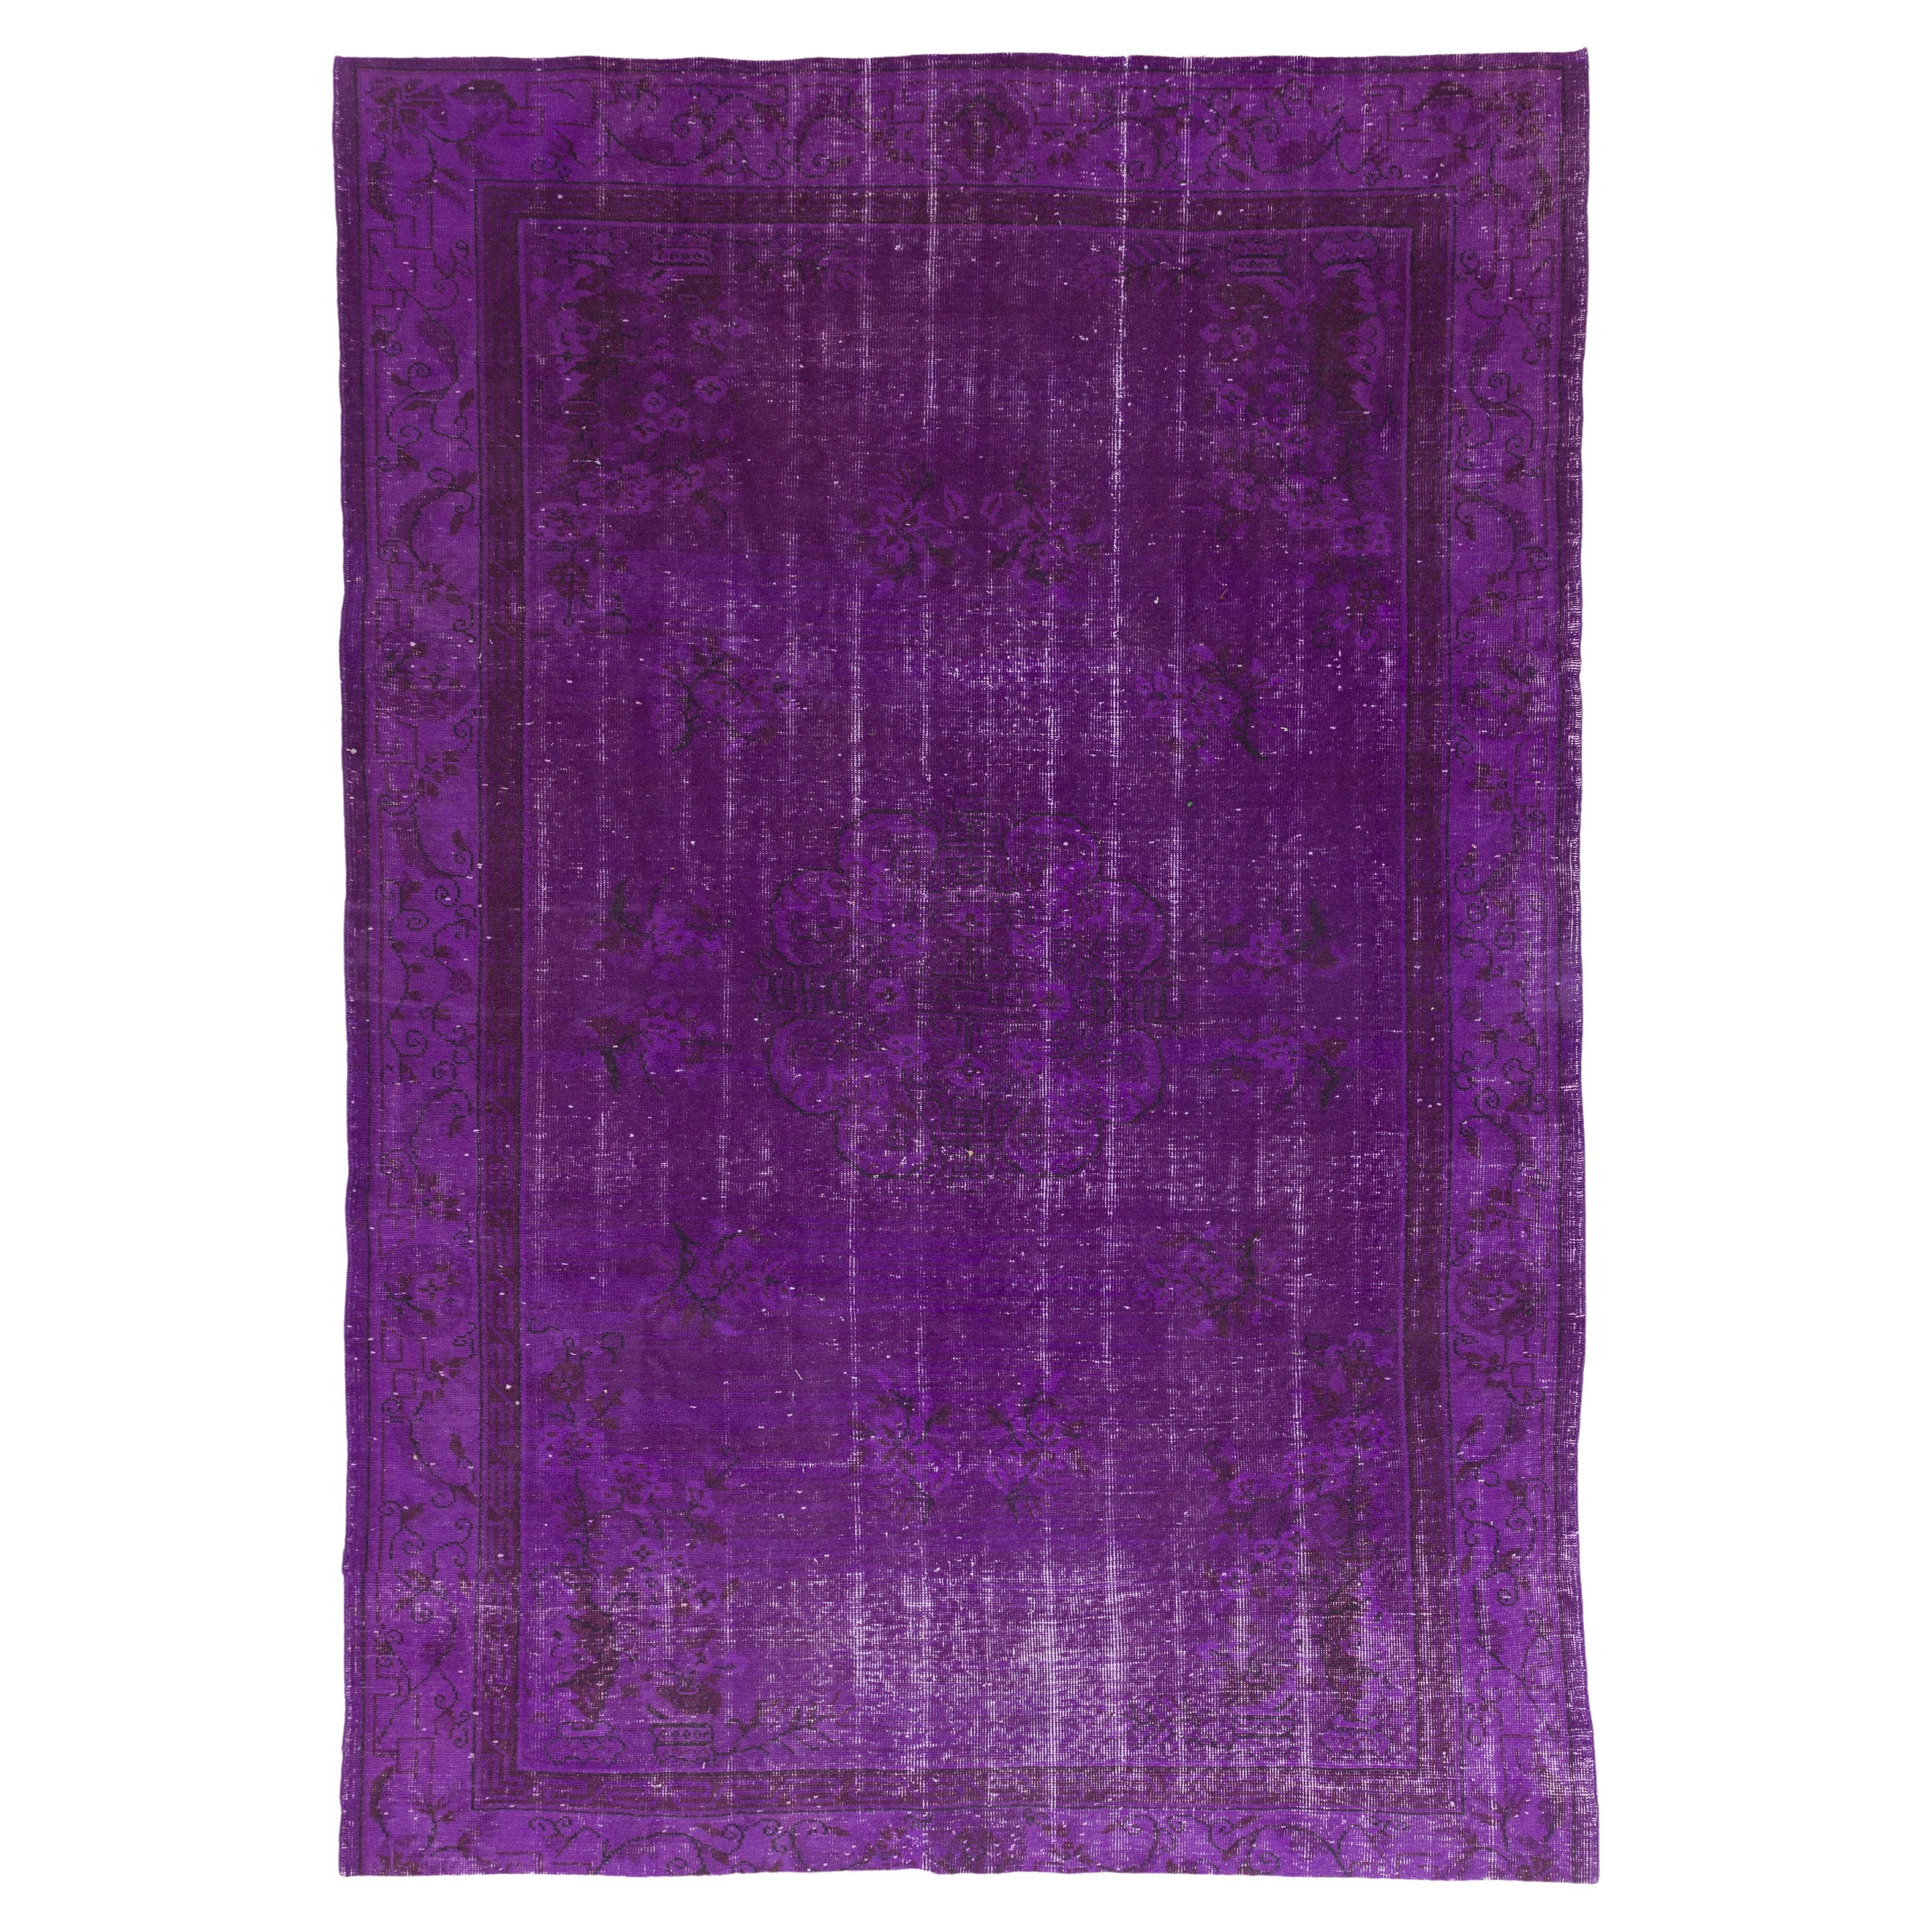 6,2 x 9,2 m Vintage-Art-Déco-Teppich in Violett, übergefärbt, ideal für moderne Innenräume